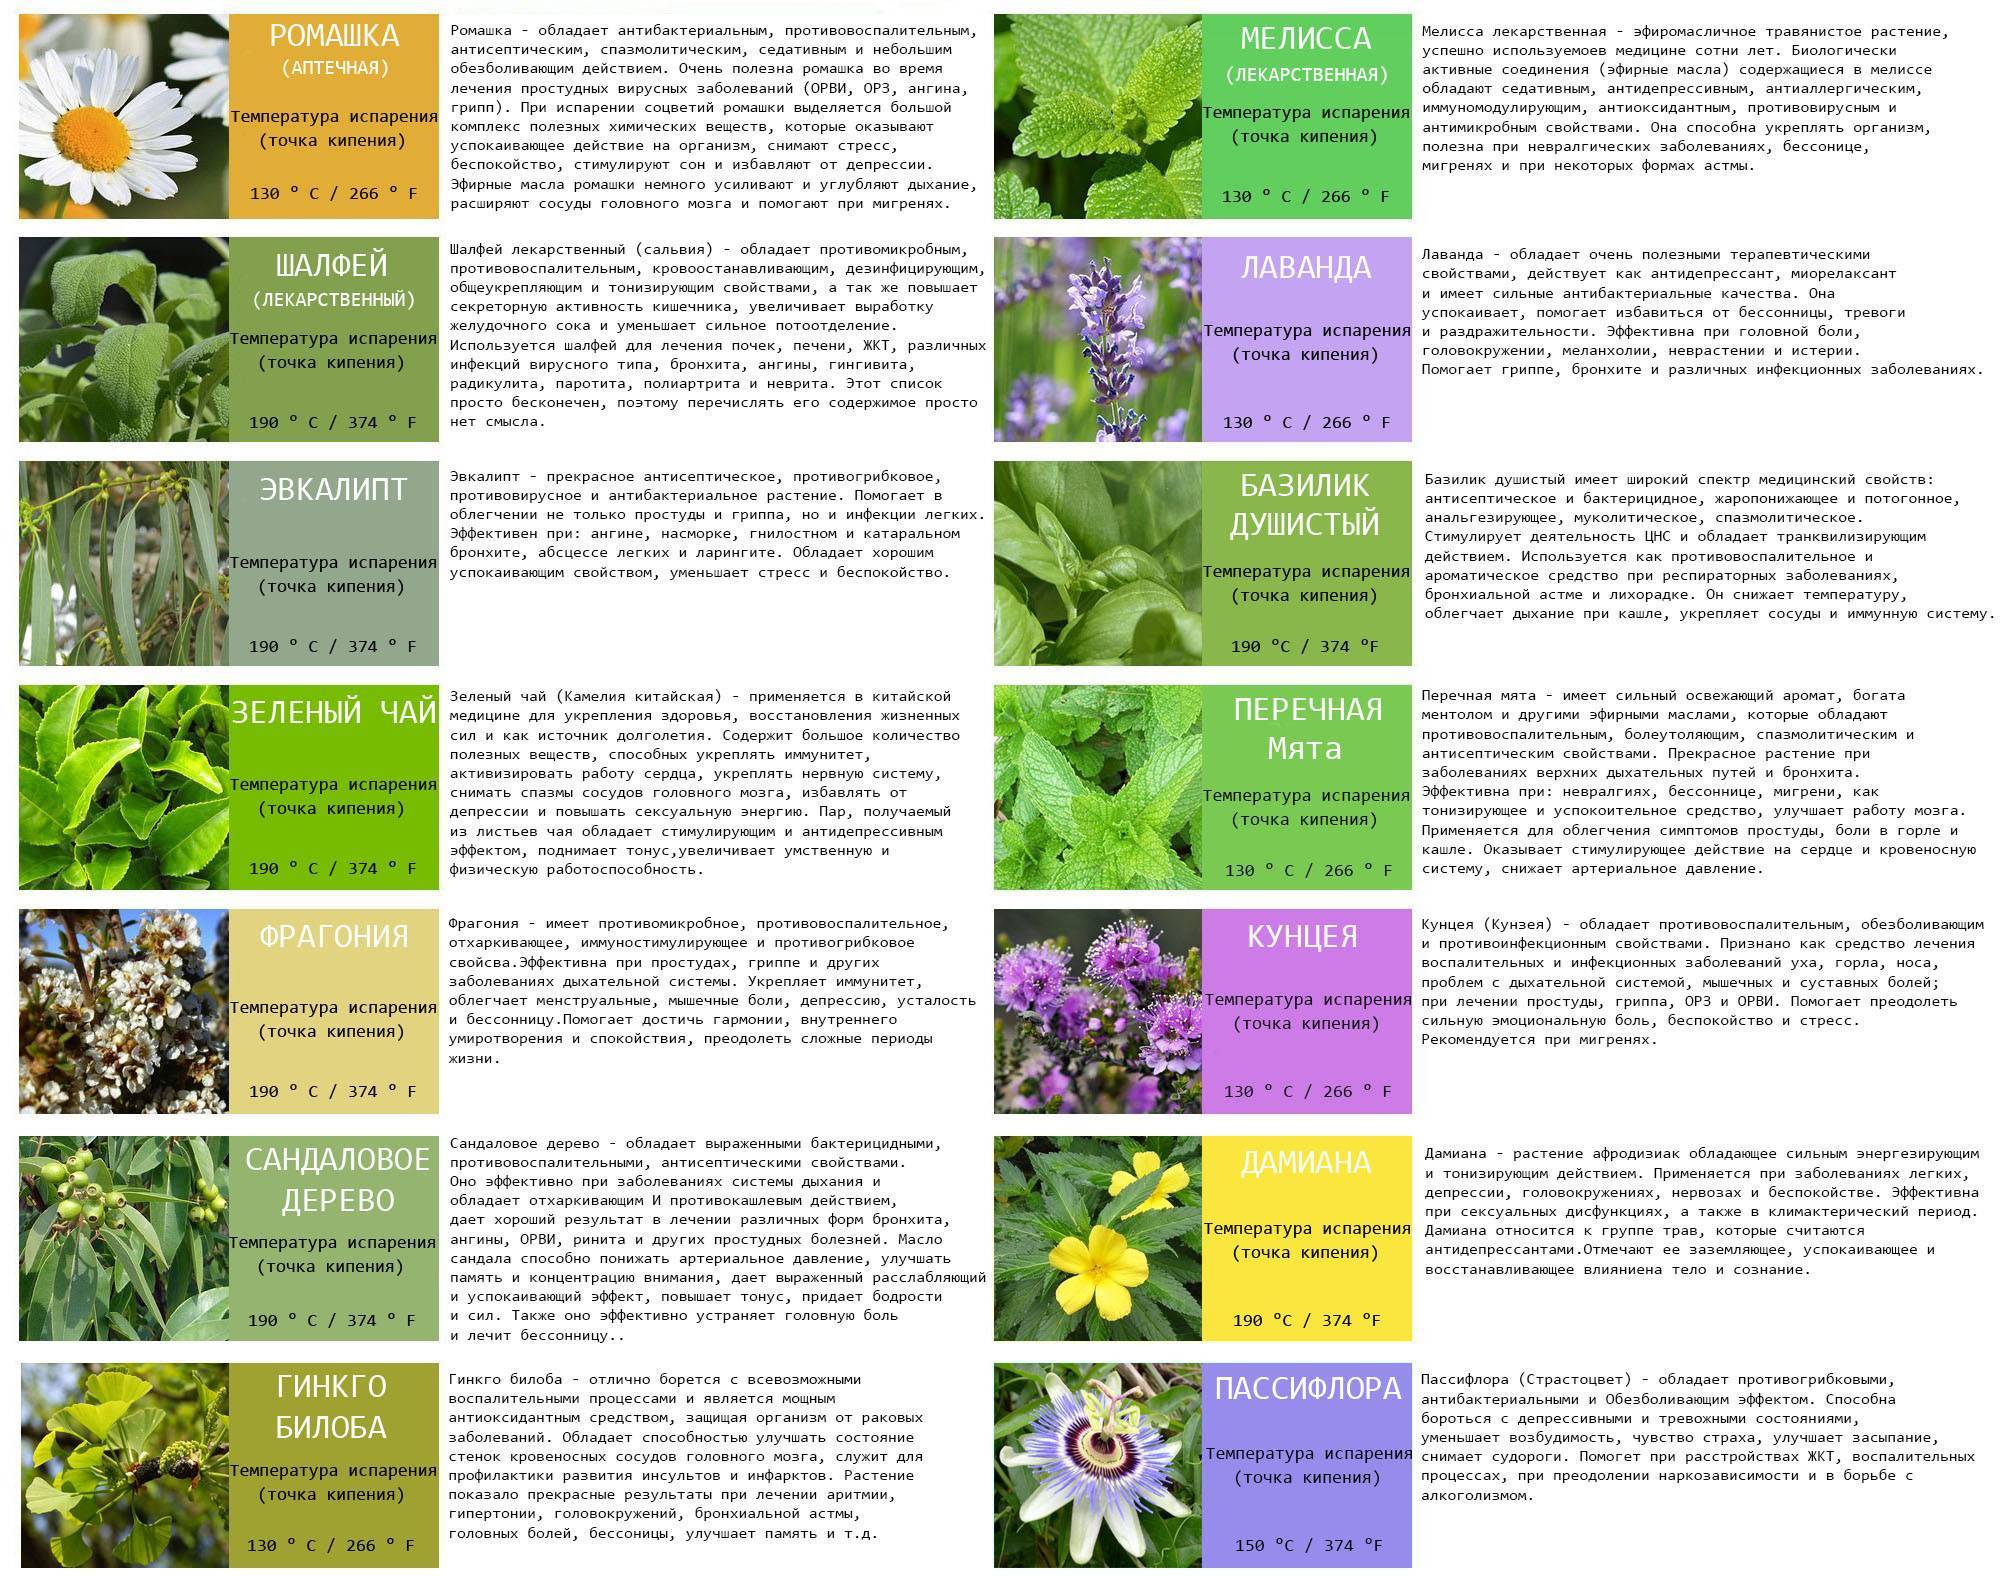 Лечение натуральными иммуномодуляторами растительного происхождения: классификация растений и трав